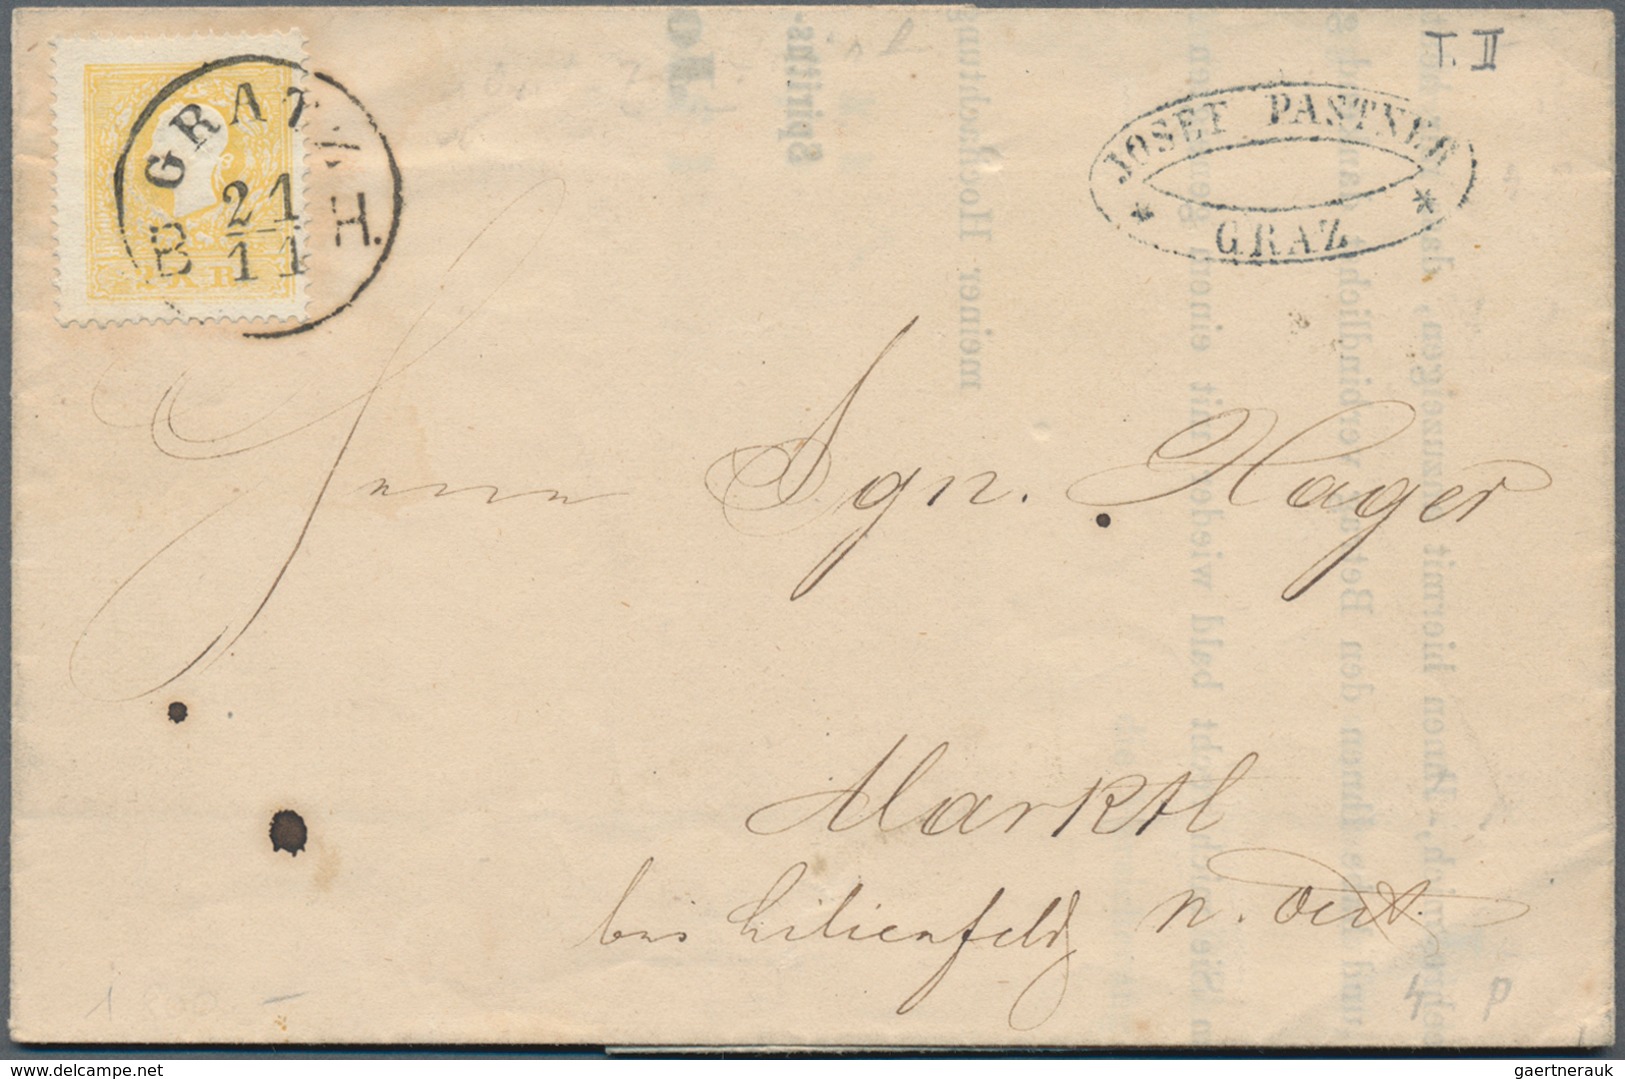 Österreich: 1857/1916 (ca.), vielseitige Partie von ca. 135 Briefen und gebrauchten Ganzsachen mit S